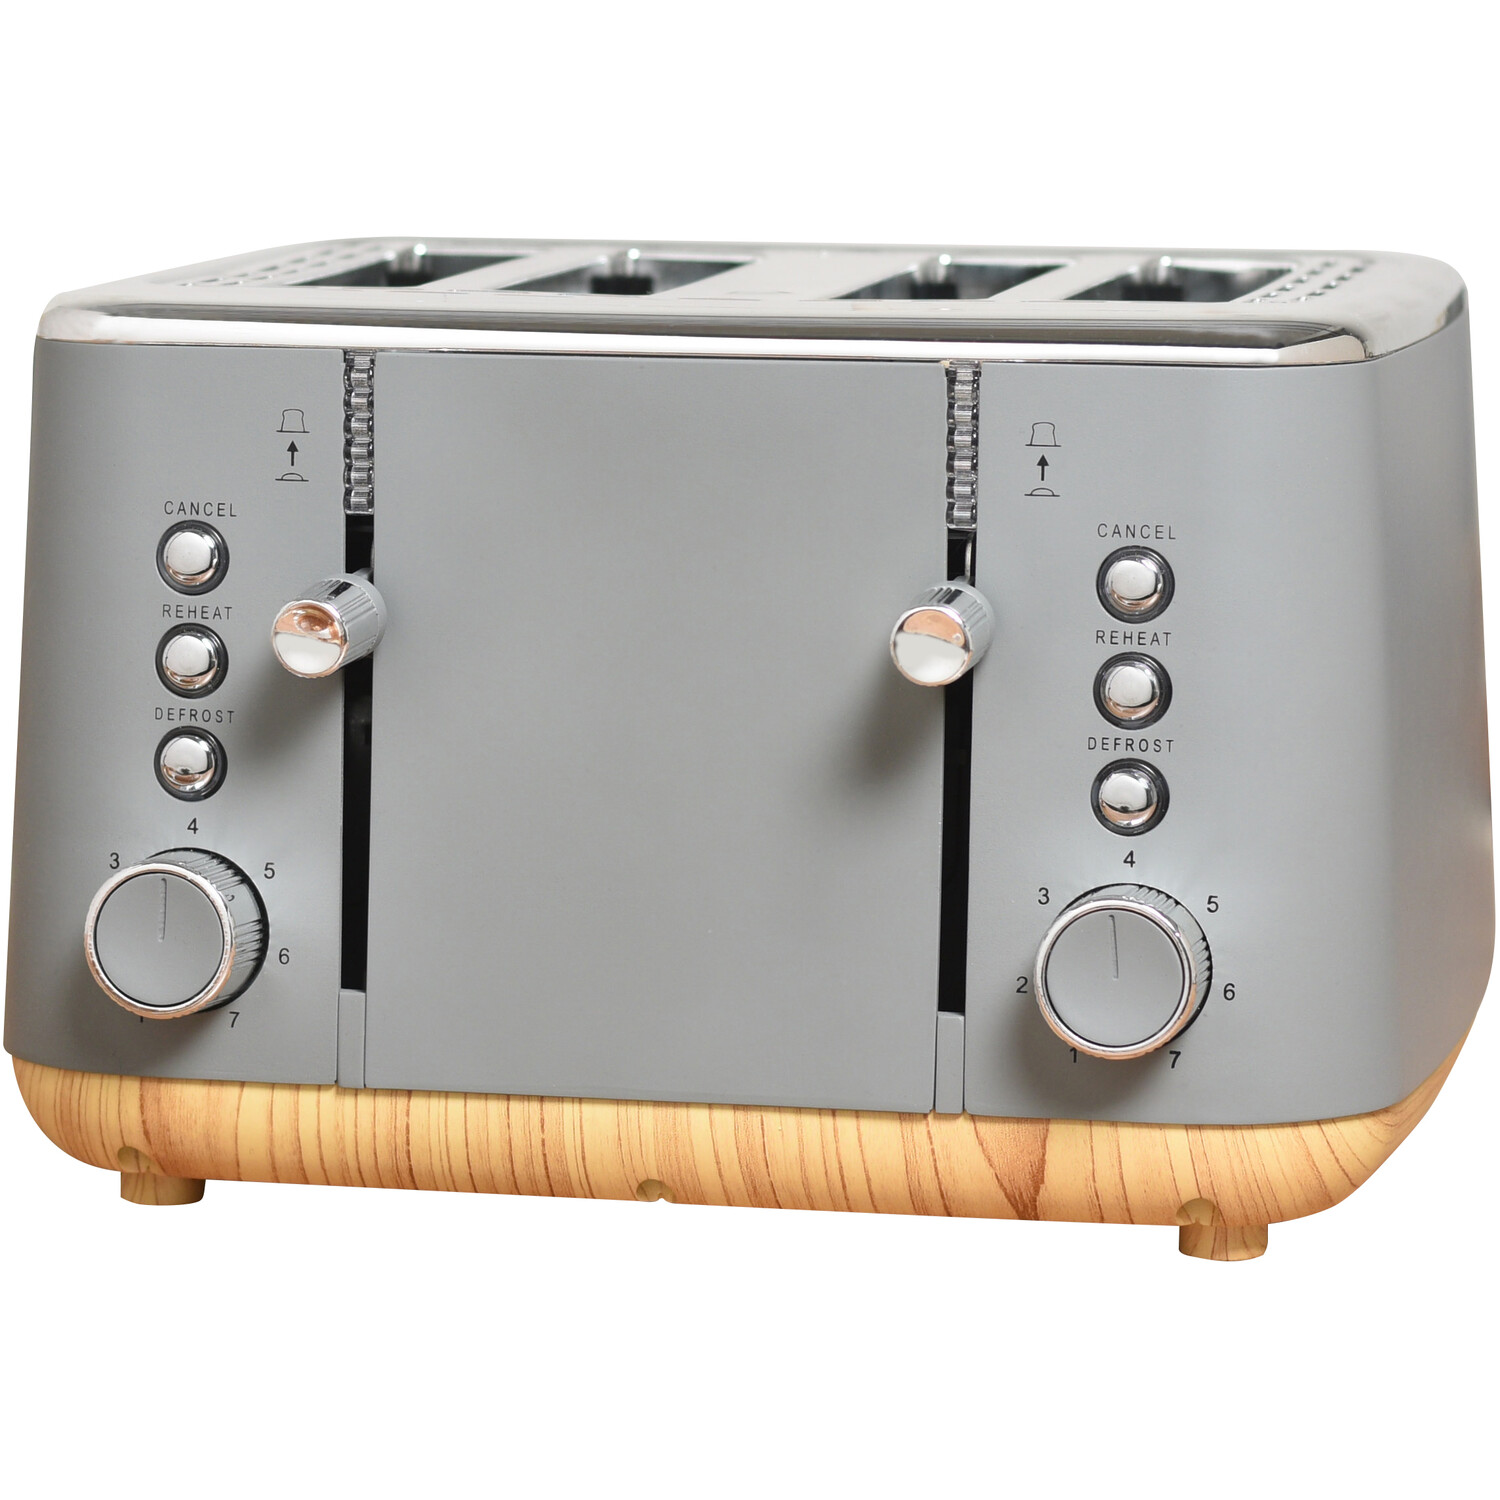 Oslo Grey 4 Slot Toaster Image